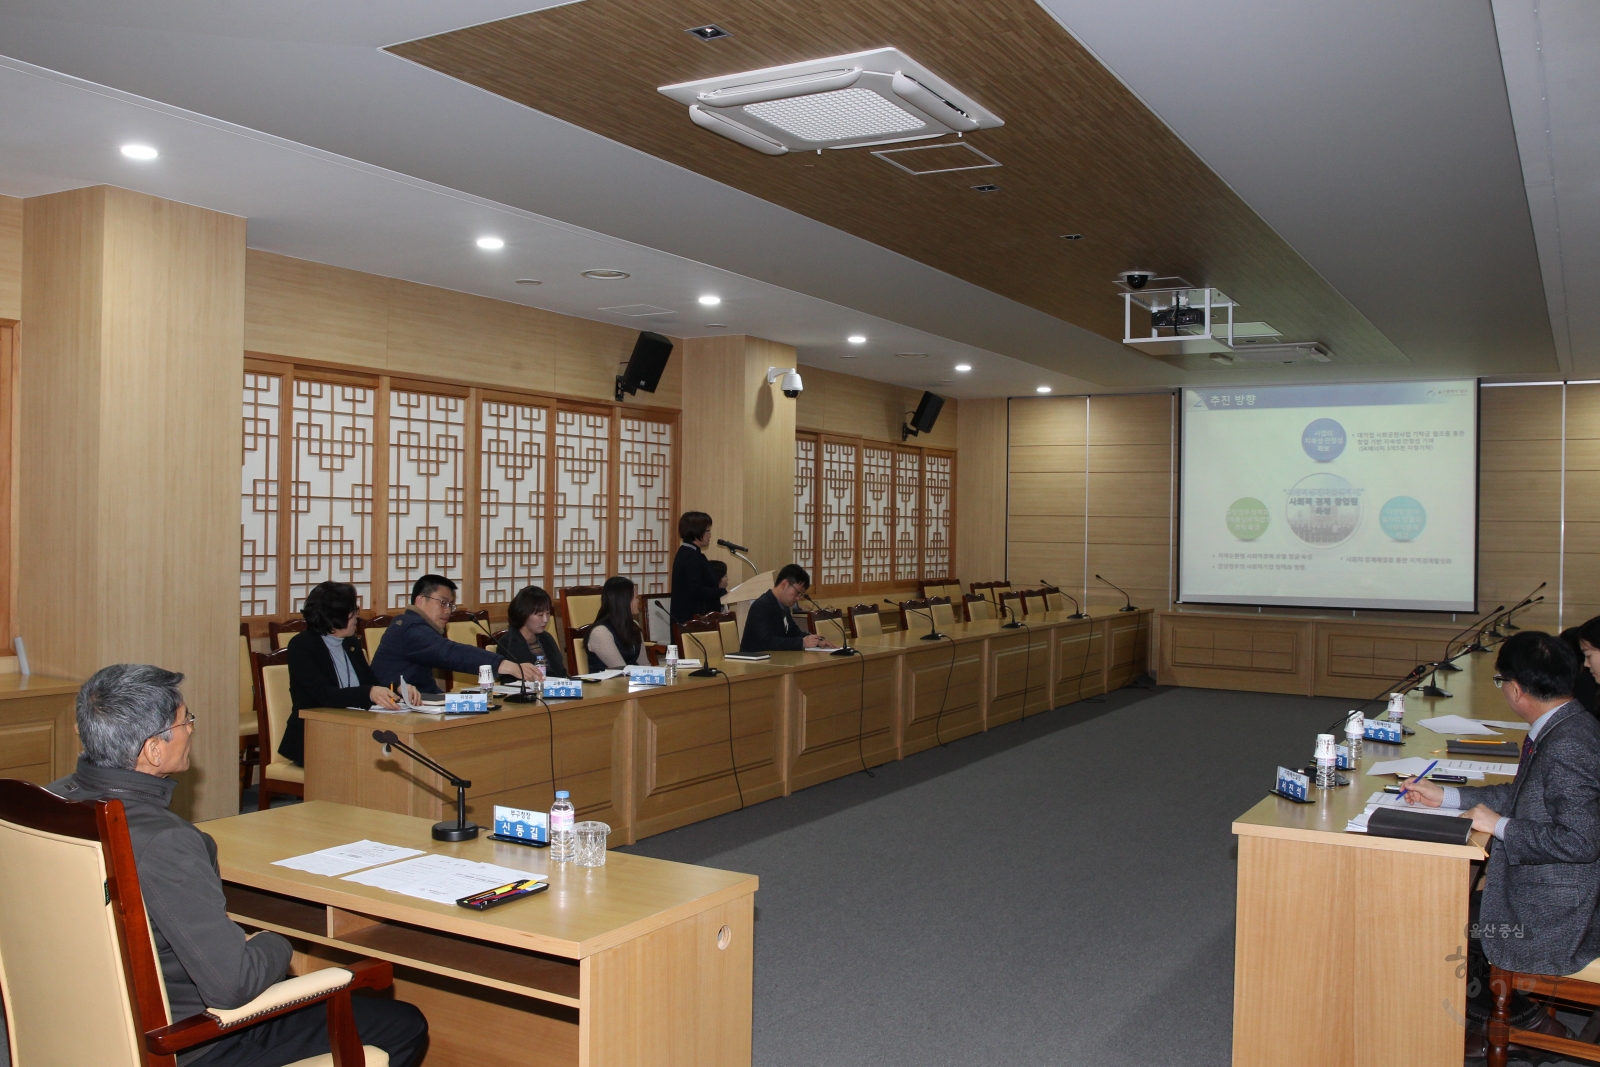 2016년 규제개혁 추진상황 점검회의 의 사진